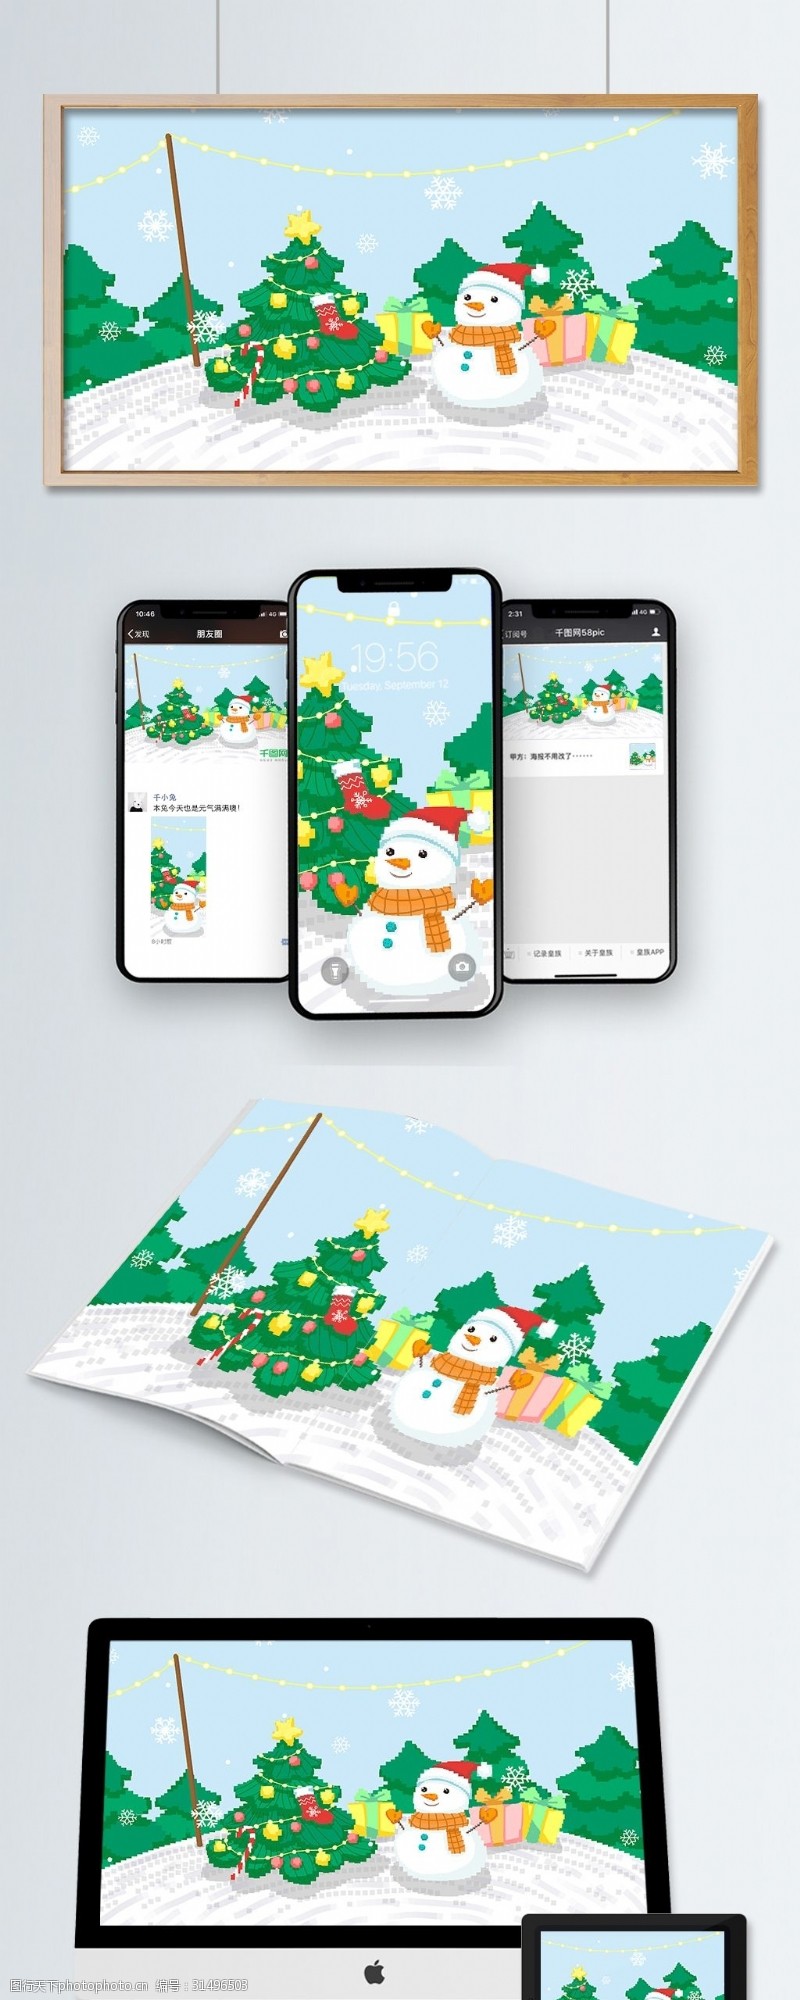 手机配图雪地圣诞树旁的圣诞雪人80s复古像素插画